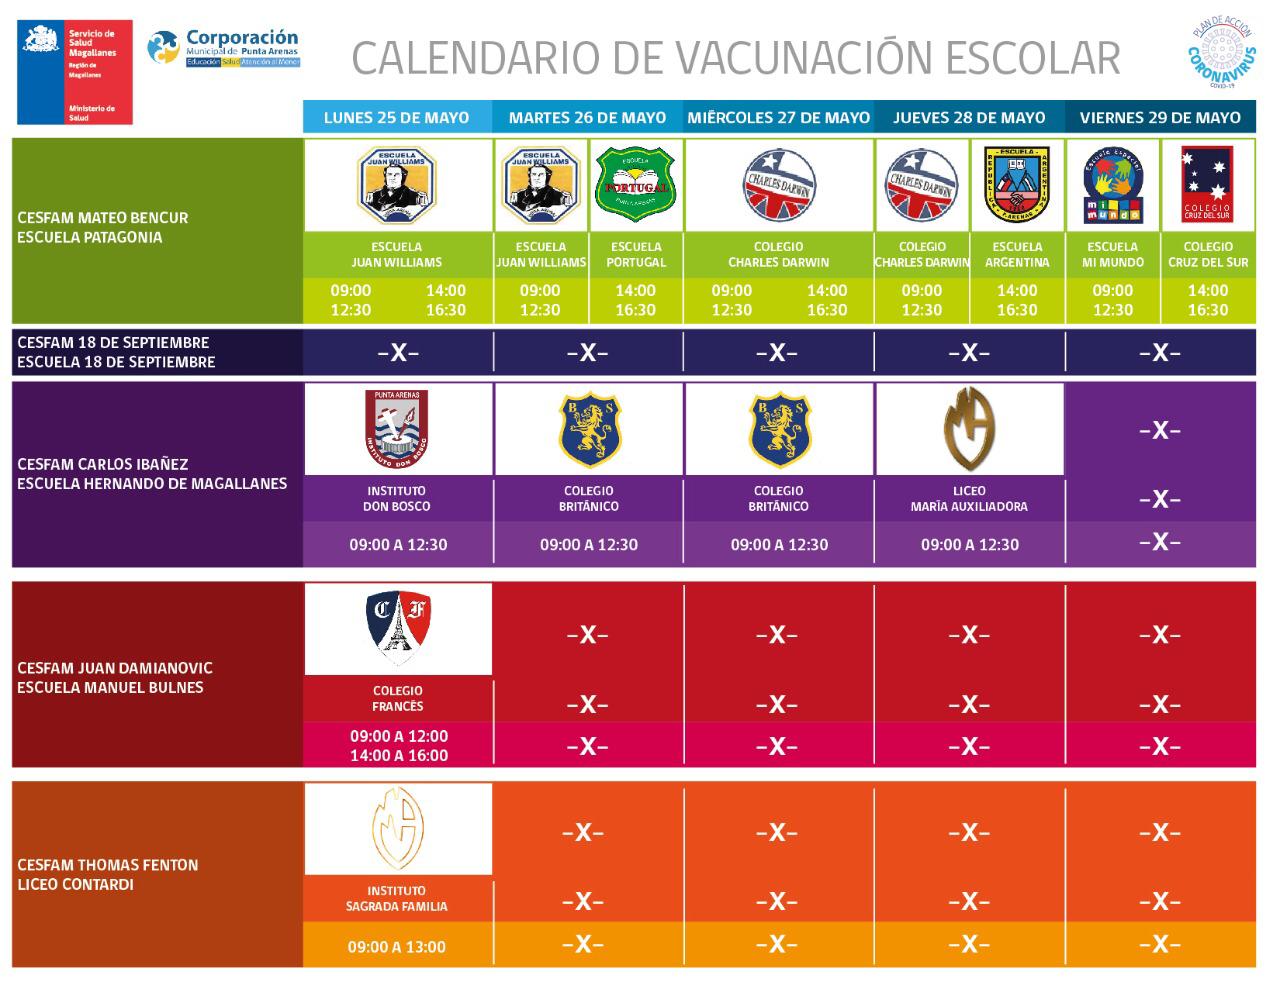 Calendario de vacunación escolar contra la influenza en Punta Arenas: desde el 25 al 30 de mayo